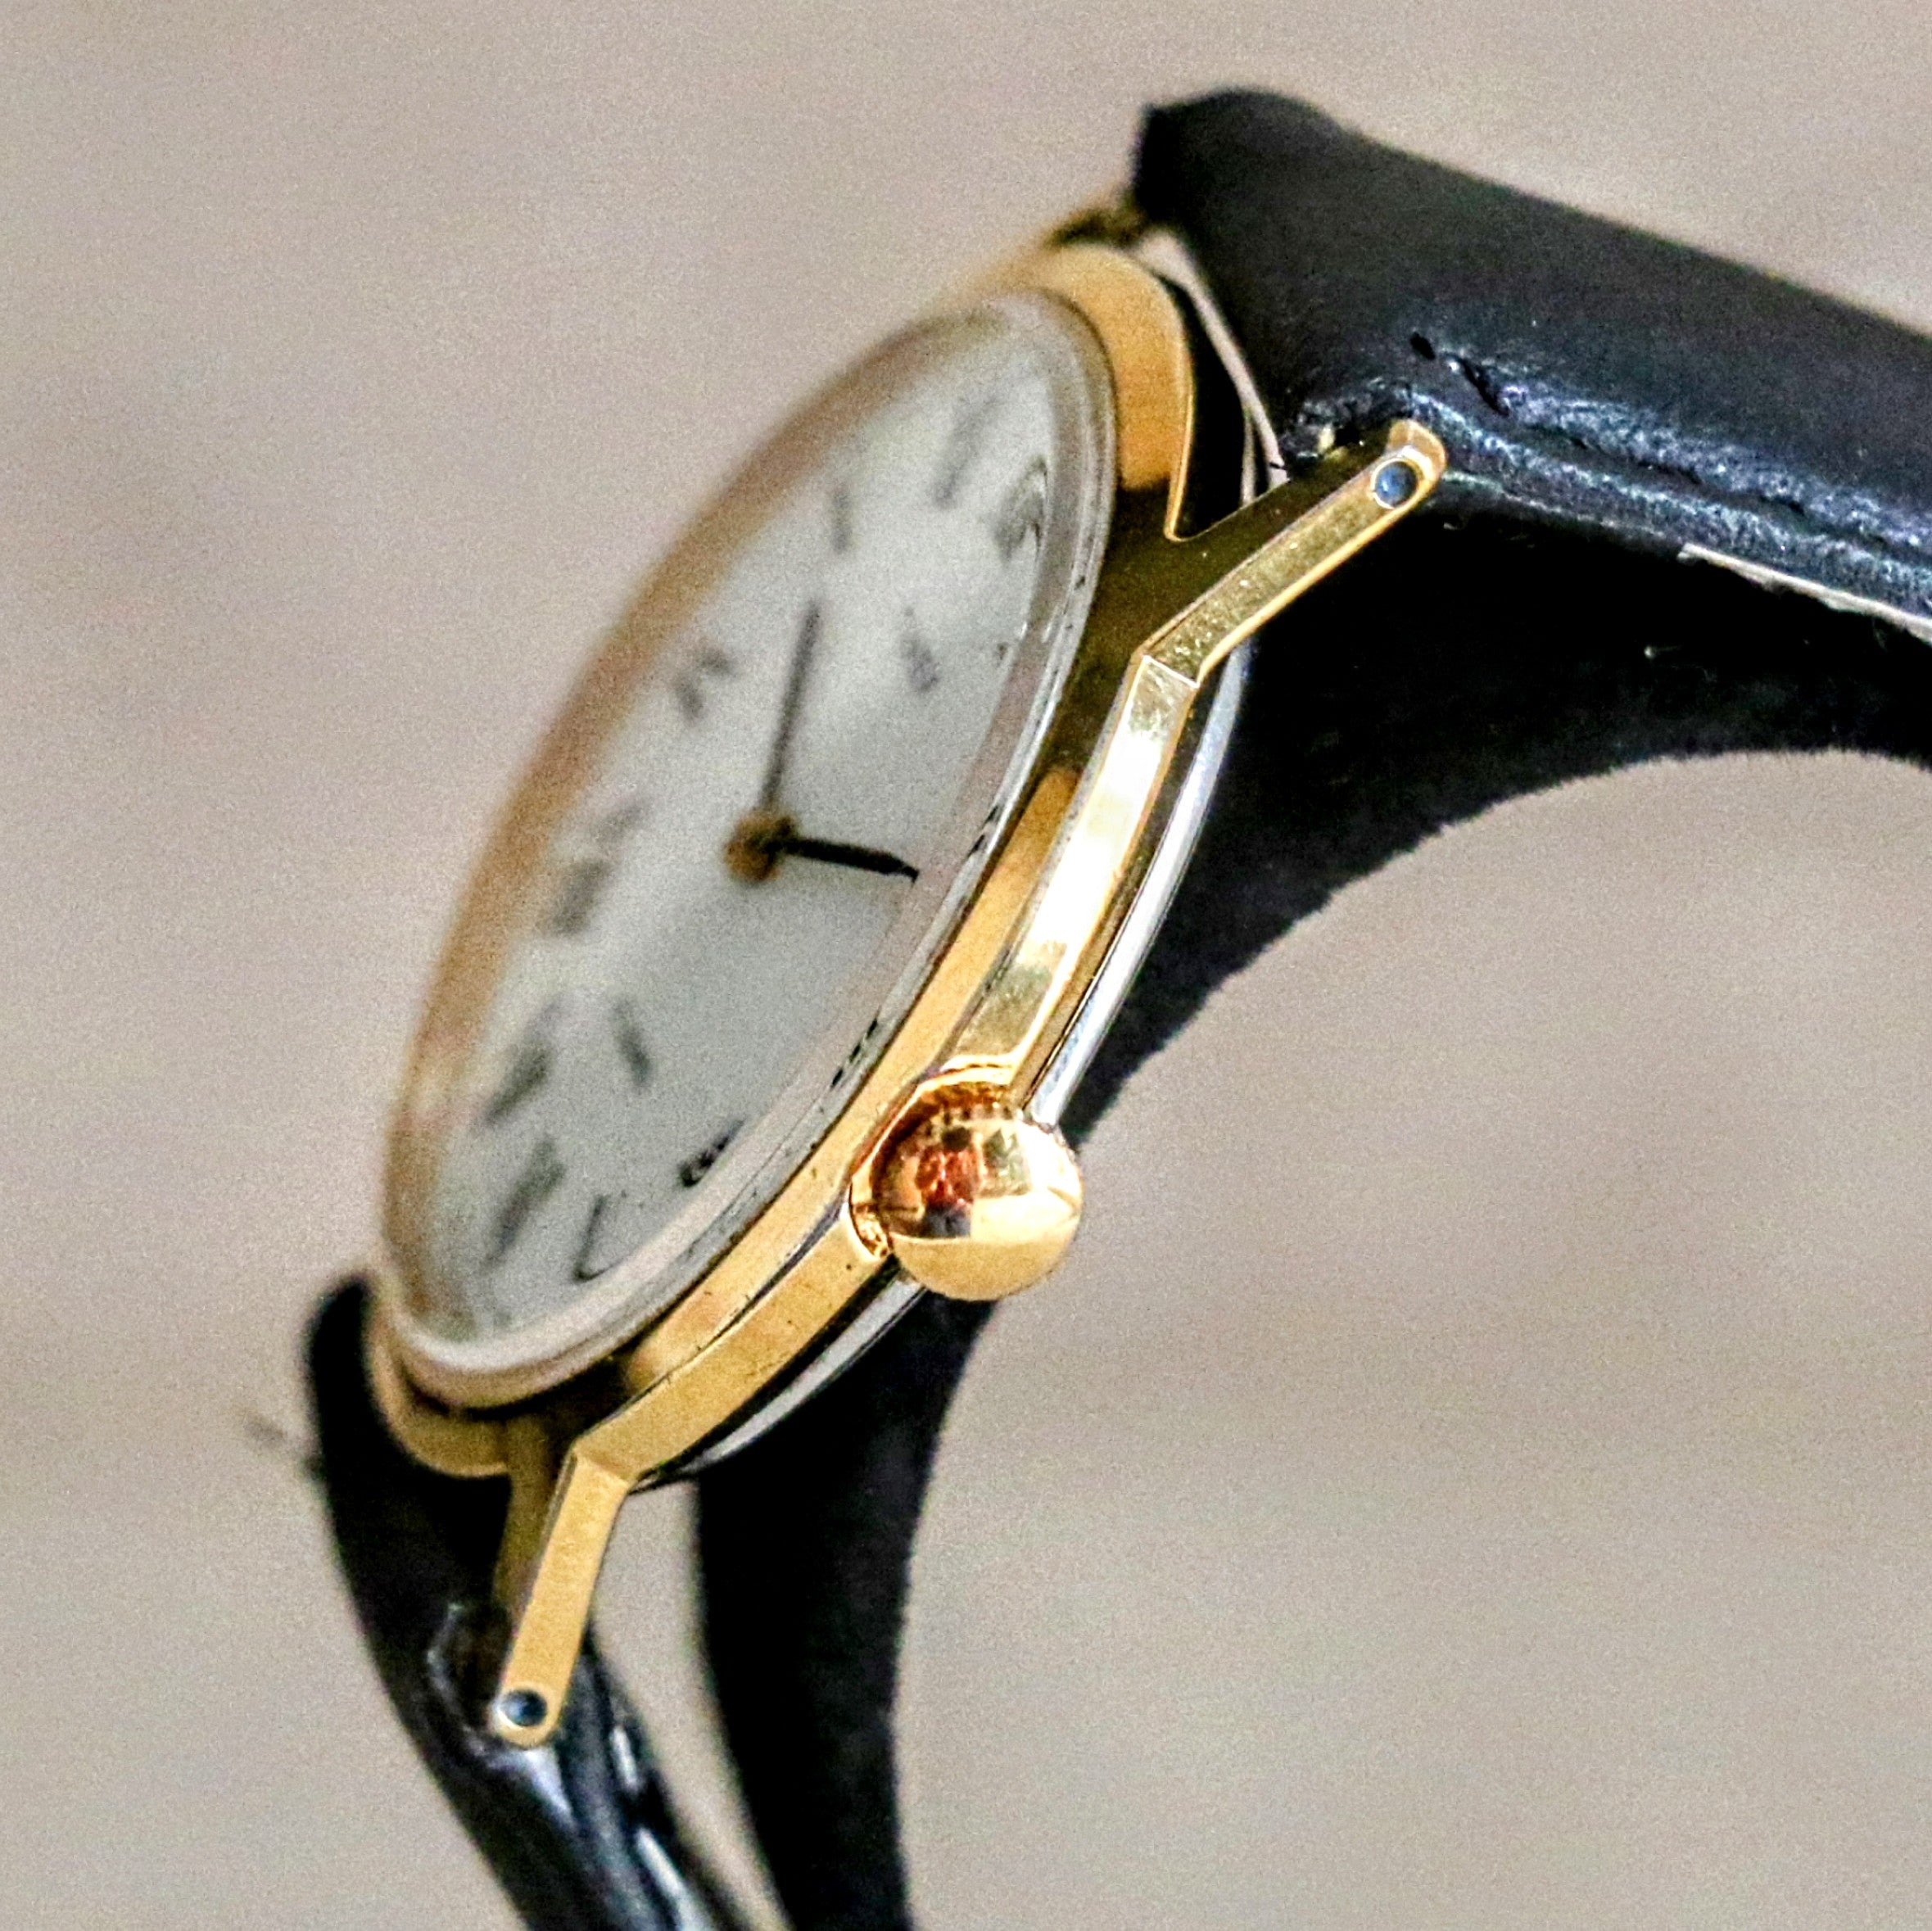 1979 TIMEX Watch Roman Numerals 17 Jewels Manual Wind 33mm Wristwatch